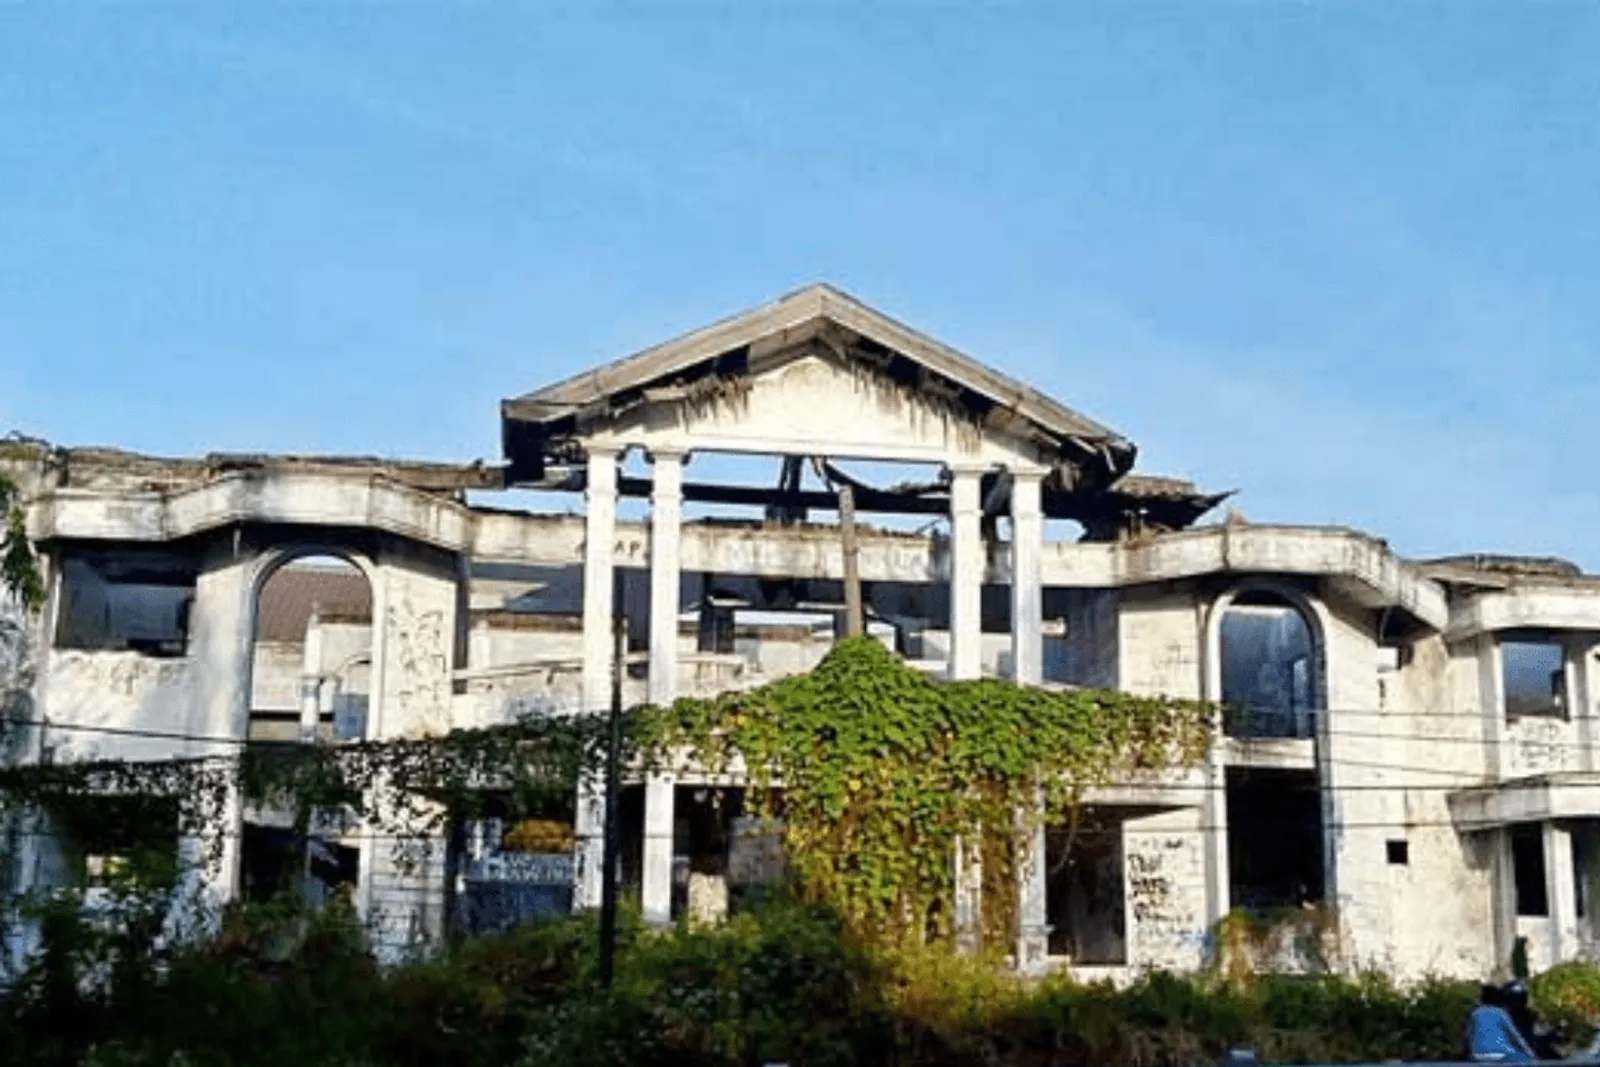 5 Potret Rumah Hantu Darmo, Tempat Angker Terkenal di Surabaya